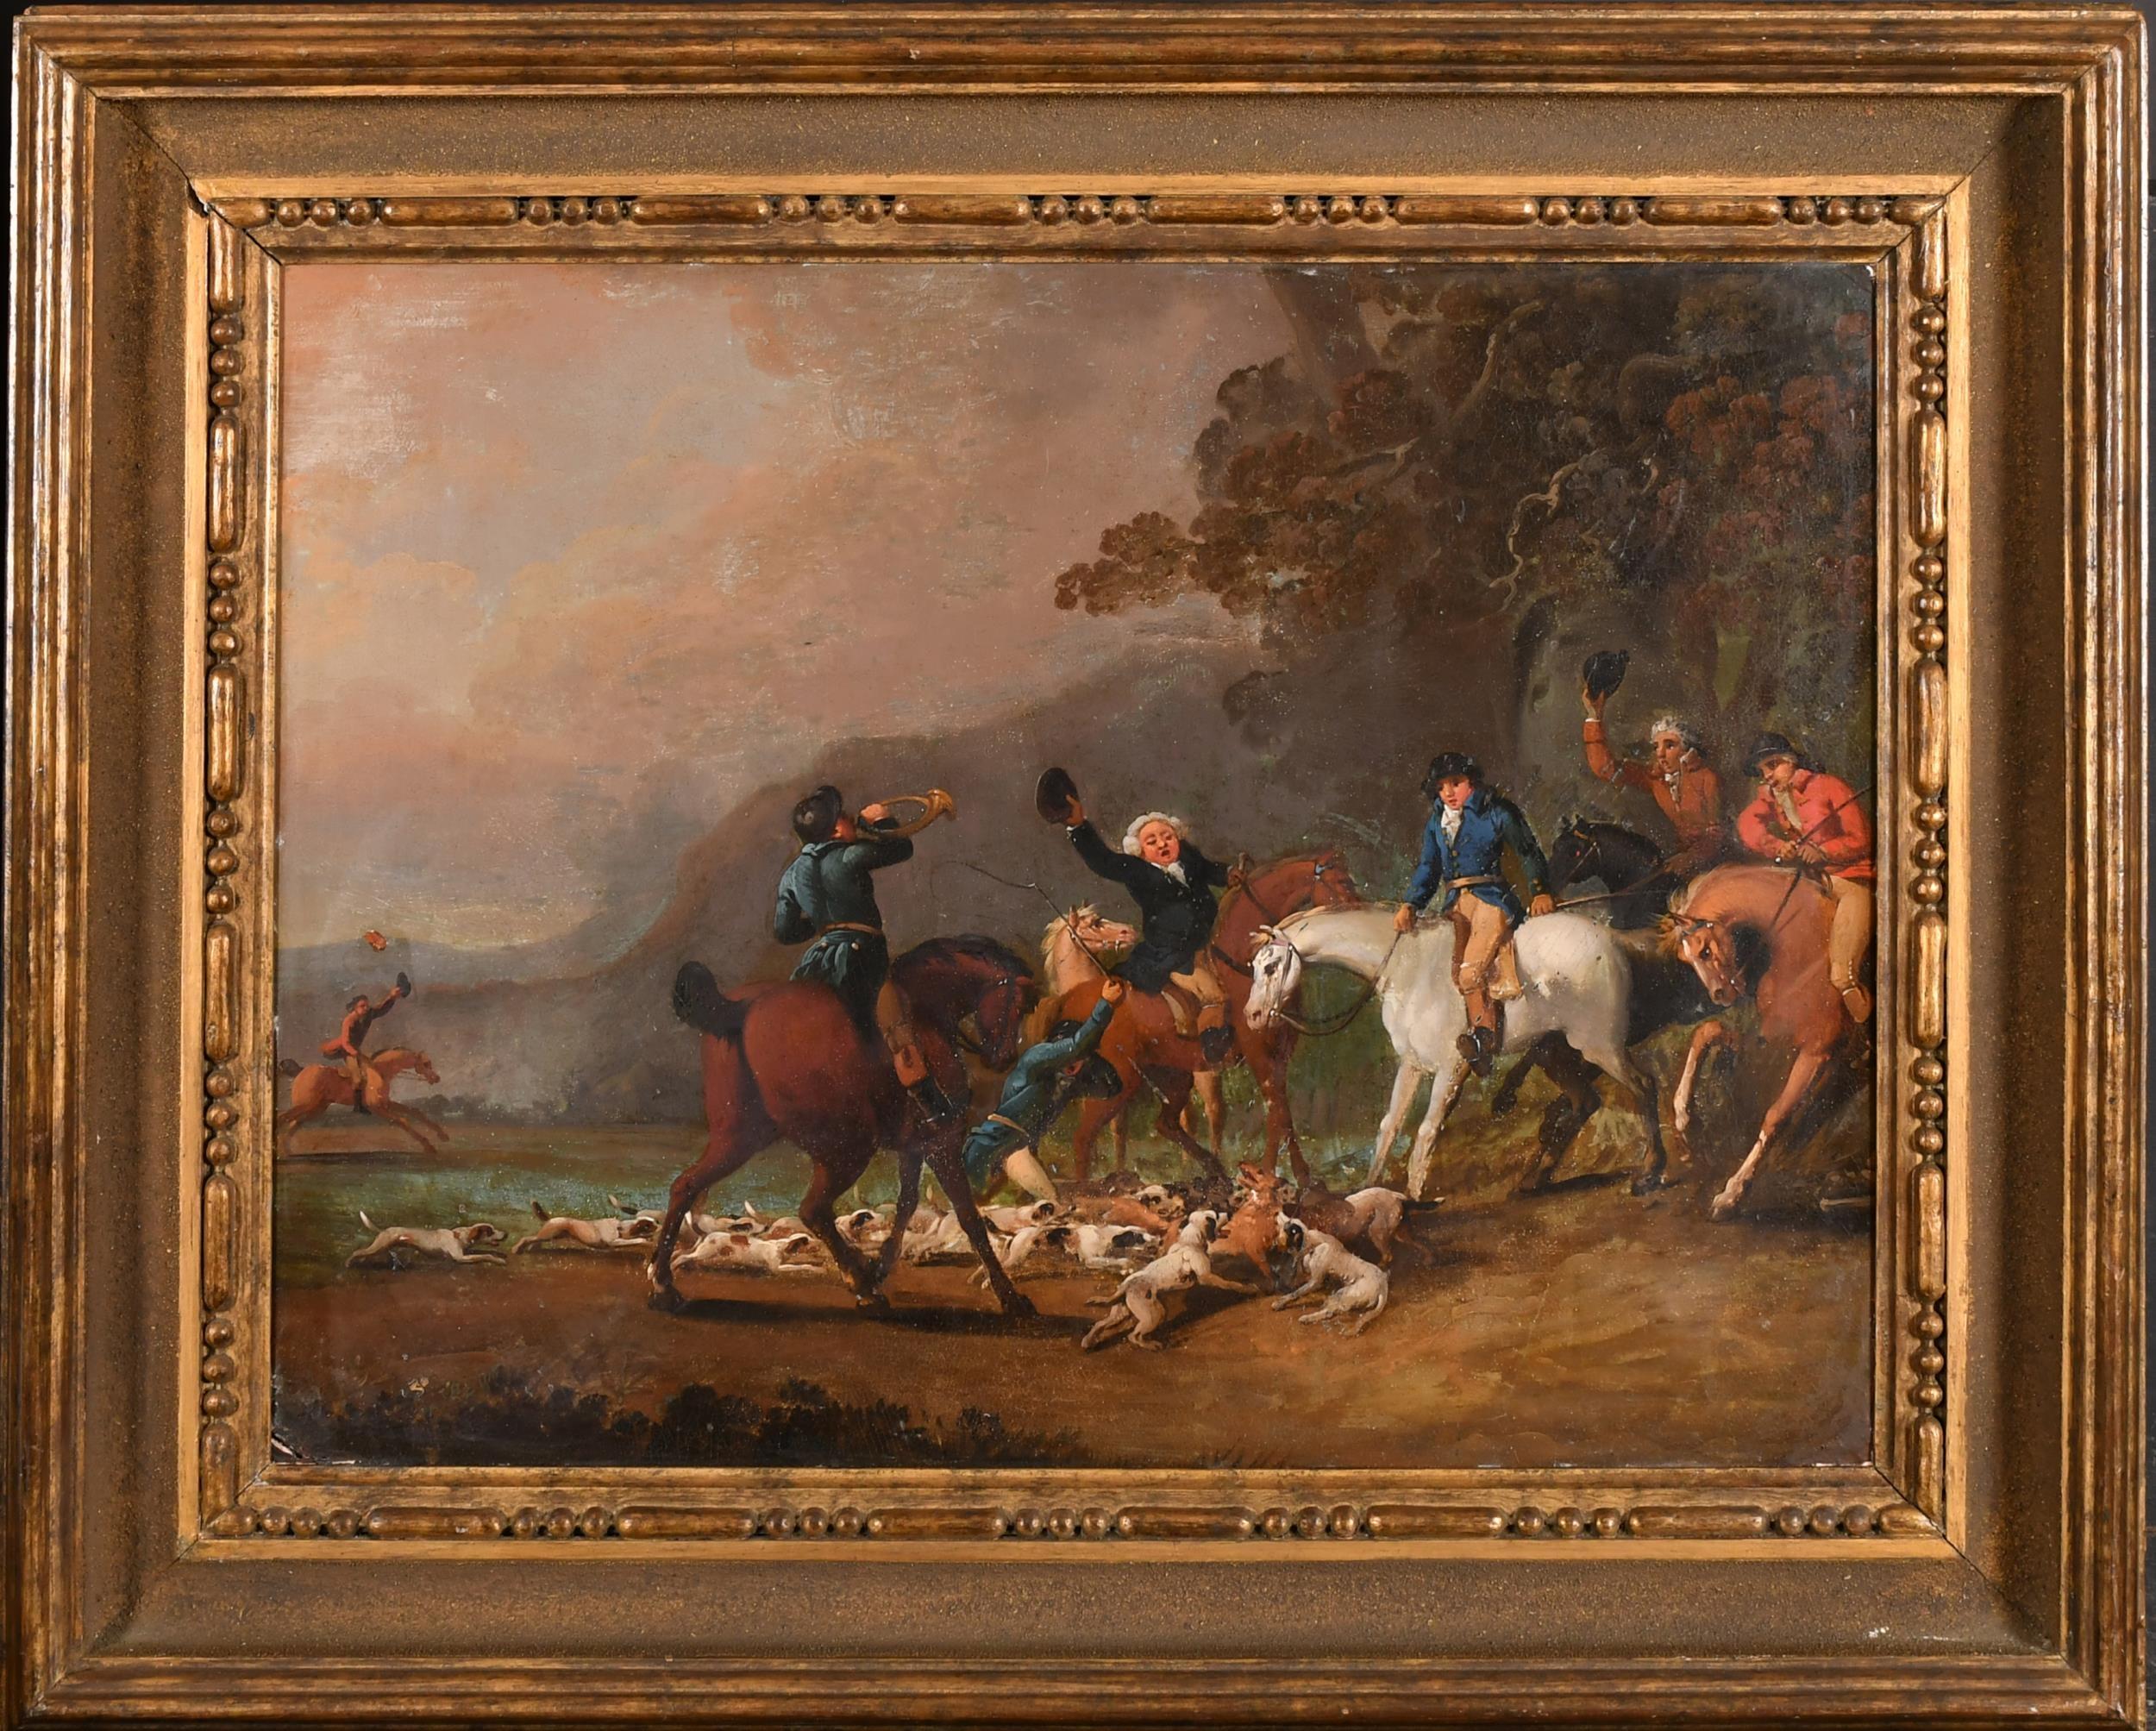 Peinture à l'huile anglaise du 18e siècle représentant une scène de chasse, des cavaliers et des chevaux